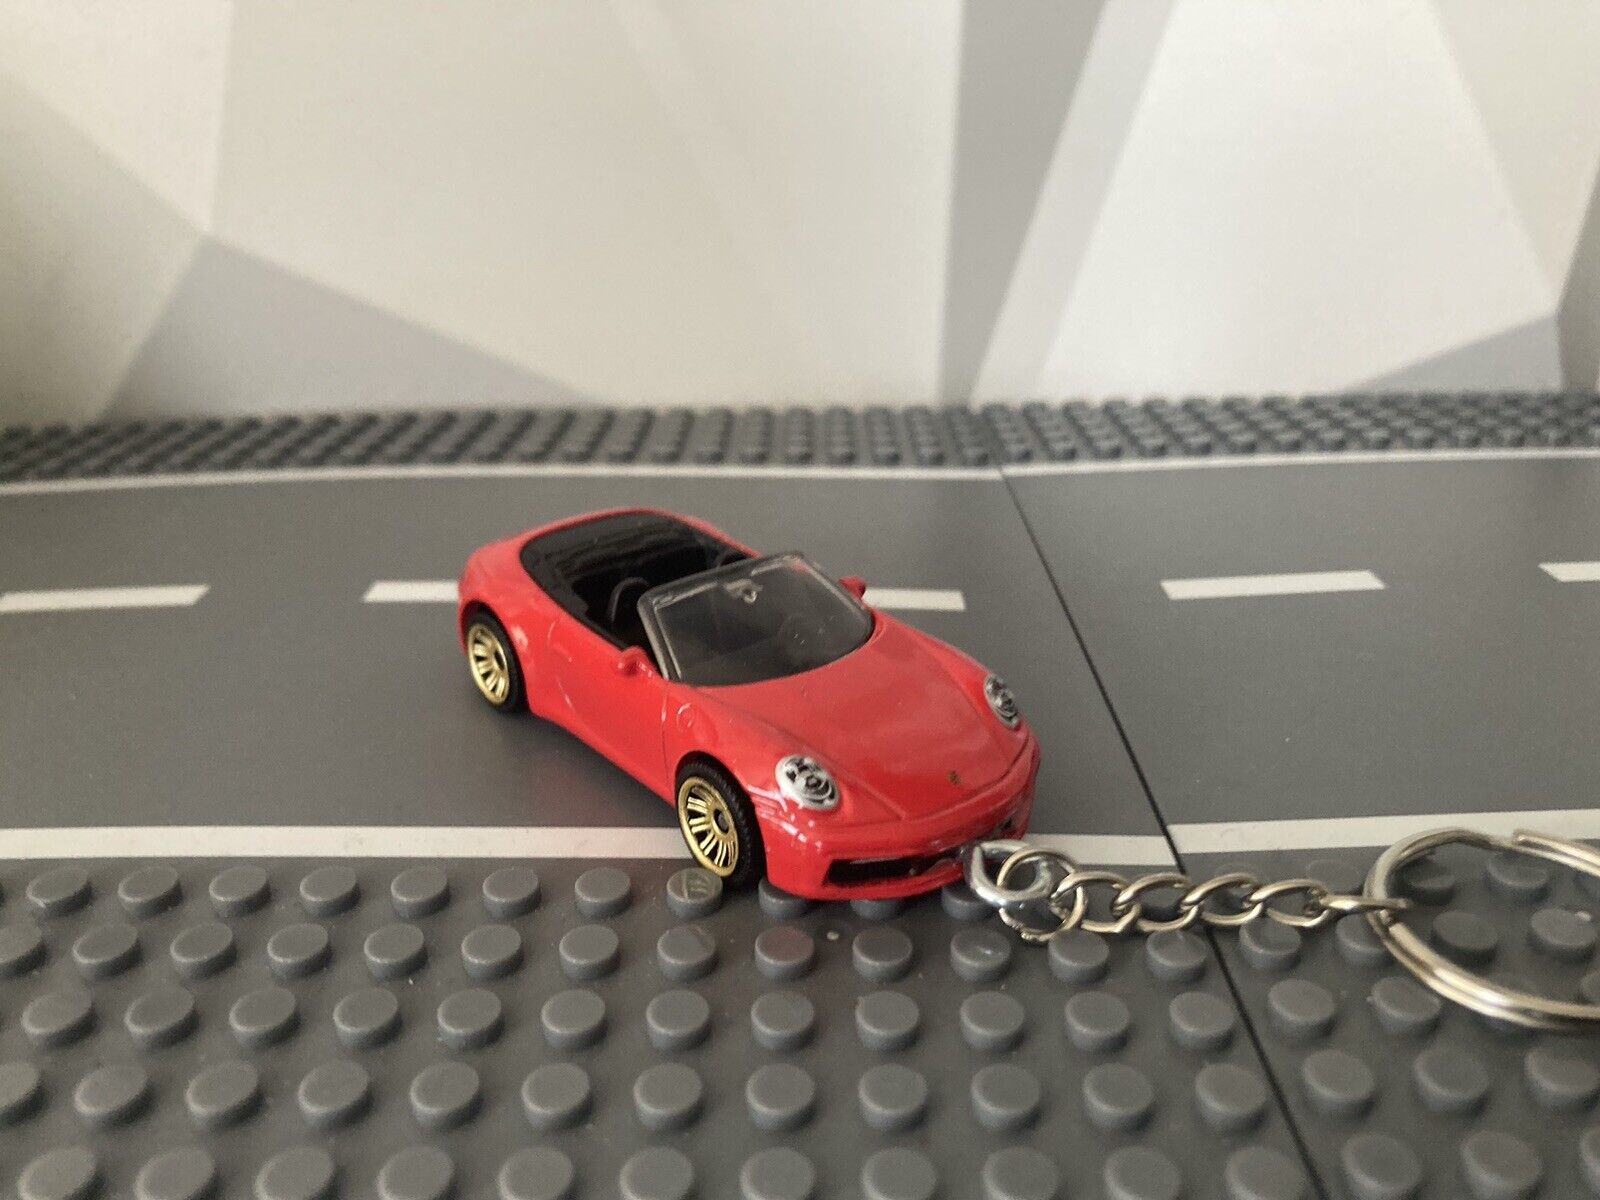 Porsche 911 Carrera Cabriolet Keychain Red Hot Wheels Matchbox + Free Gift Box